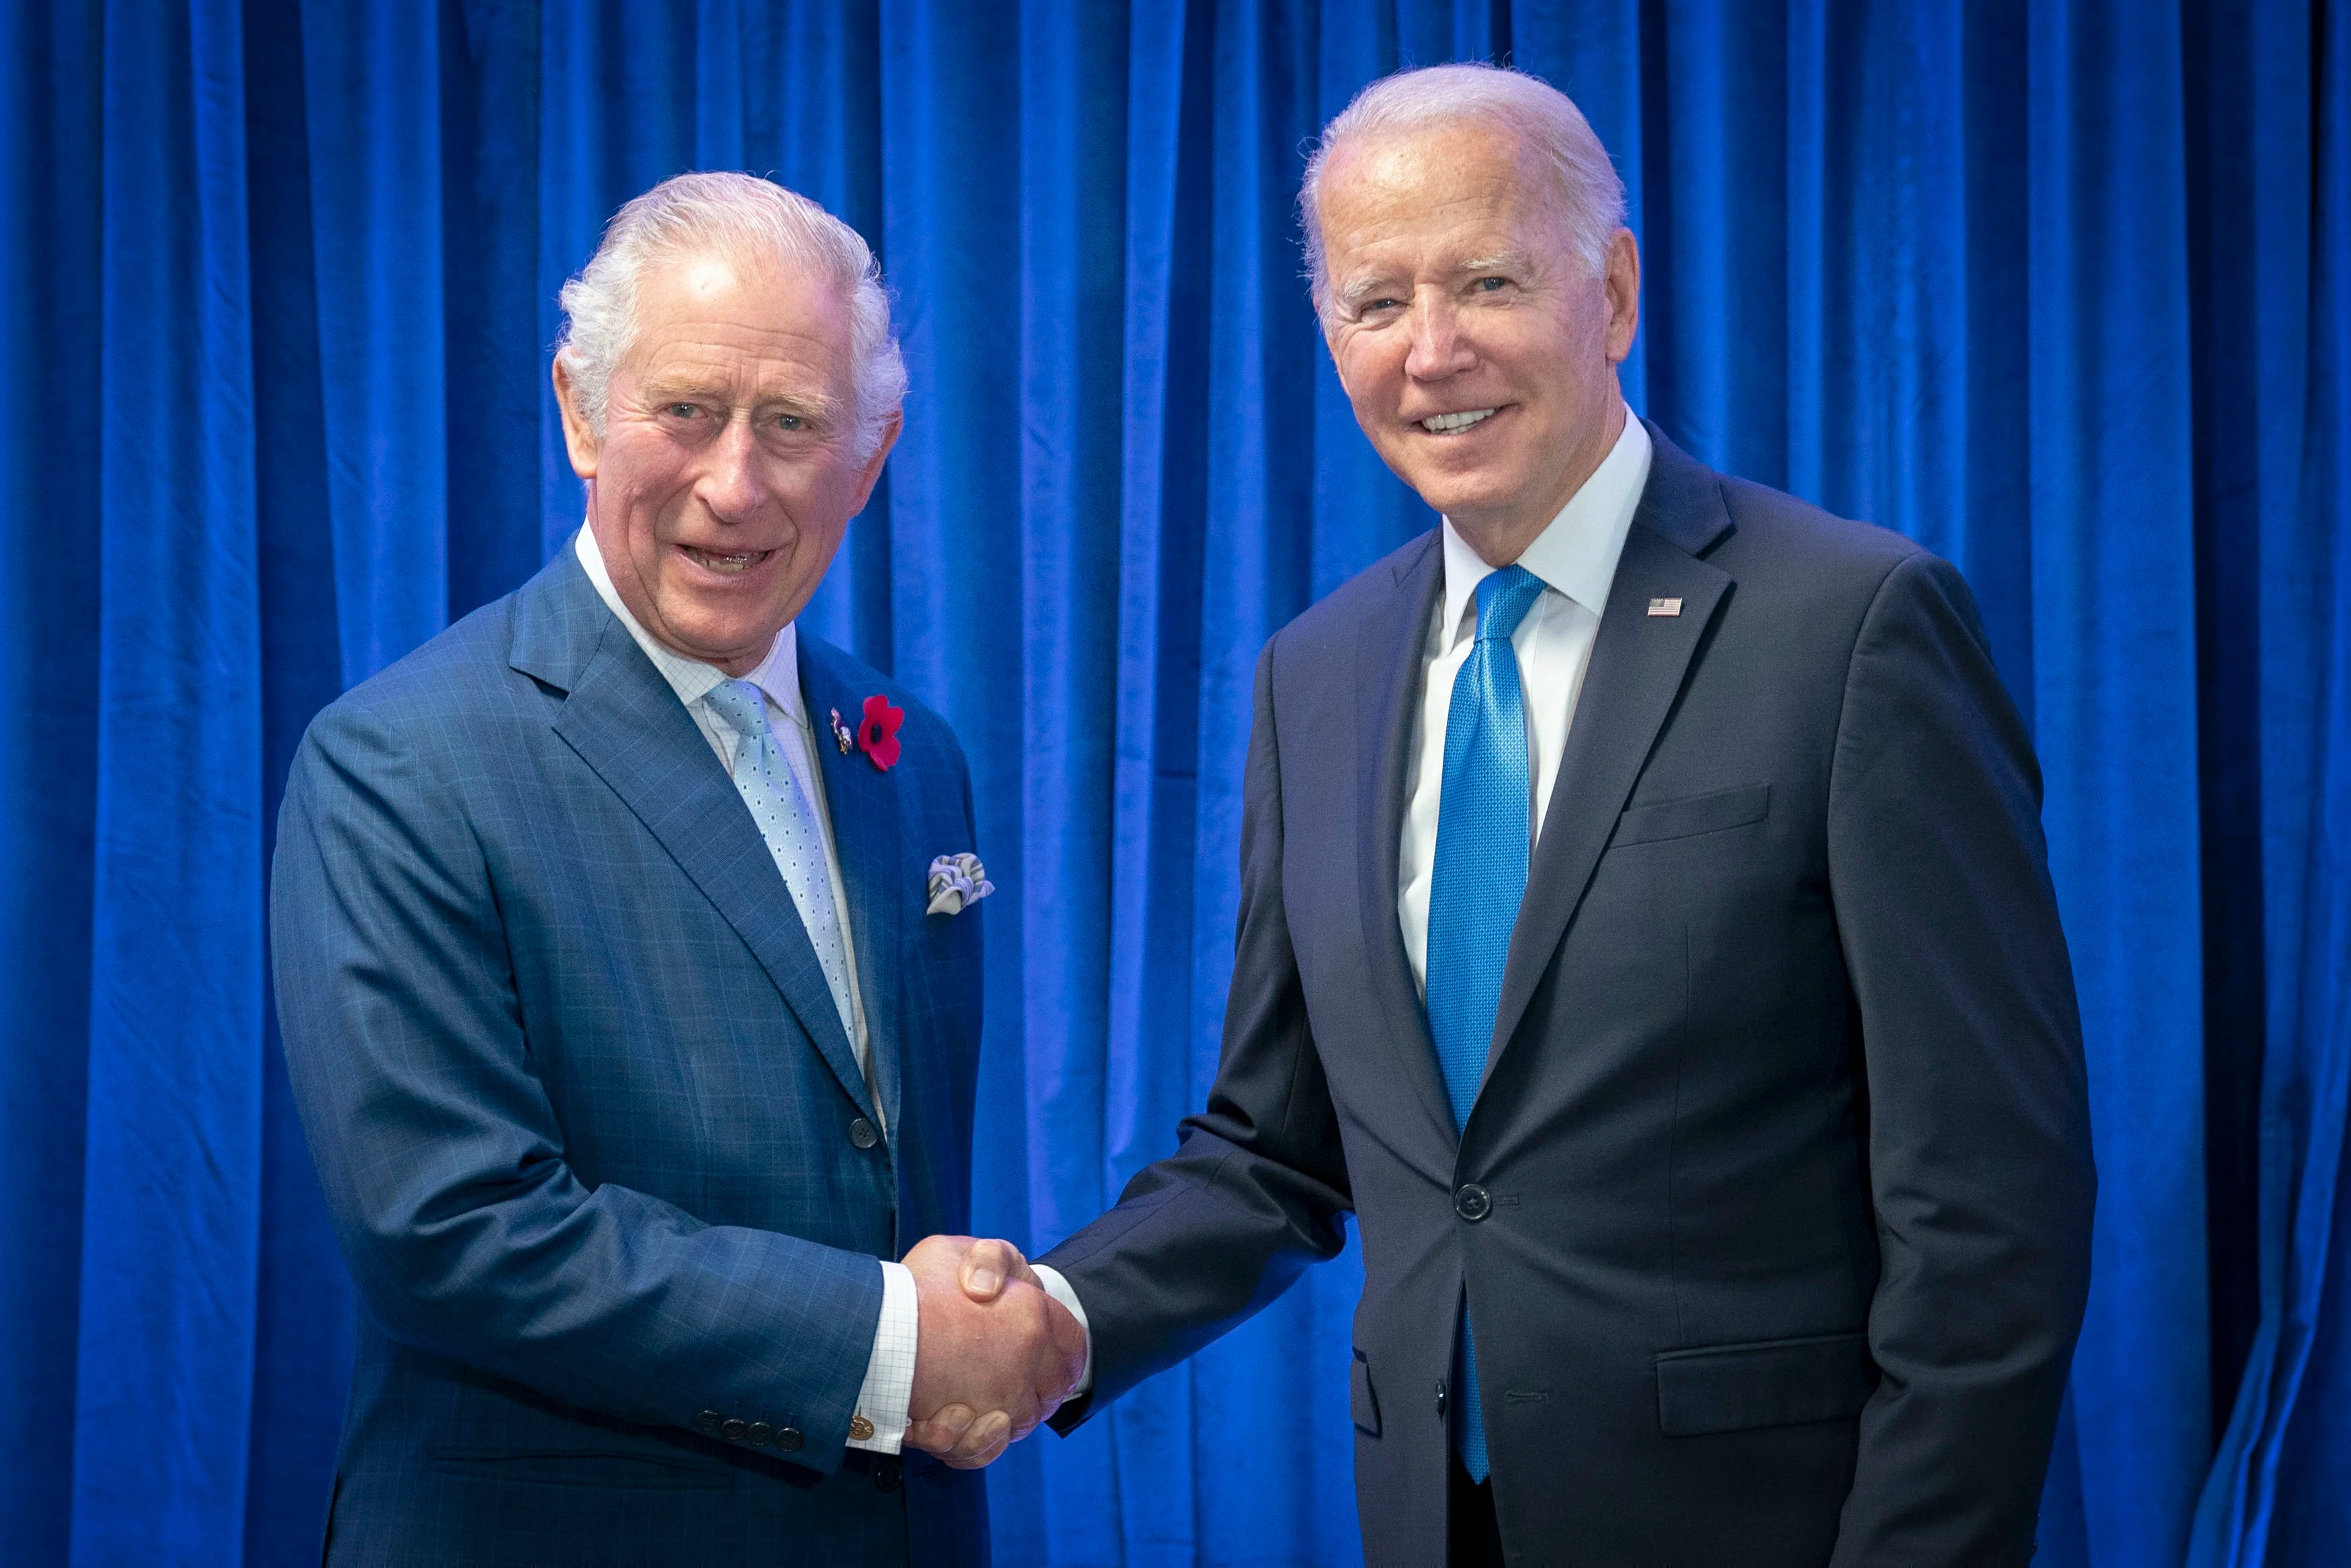 ARCHIVO - El entonces príncipe Carlos de Inglaterra, a la izquierda, recibe al presidente de Estados Unidos, Joe Biden, antes de su reunión bilateral en la cumbre climática COP26 en Glasgow, Escocia, el 2 de noviembre de 2021. (Jane Barlow/Pool Foto via AP, Archivo)